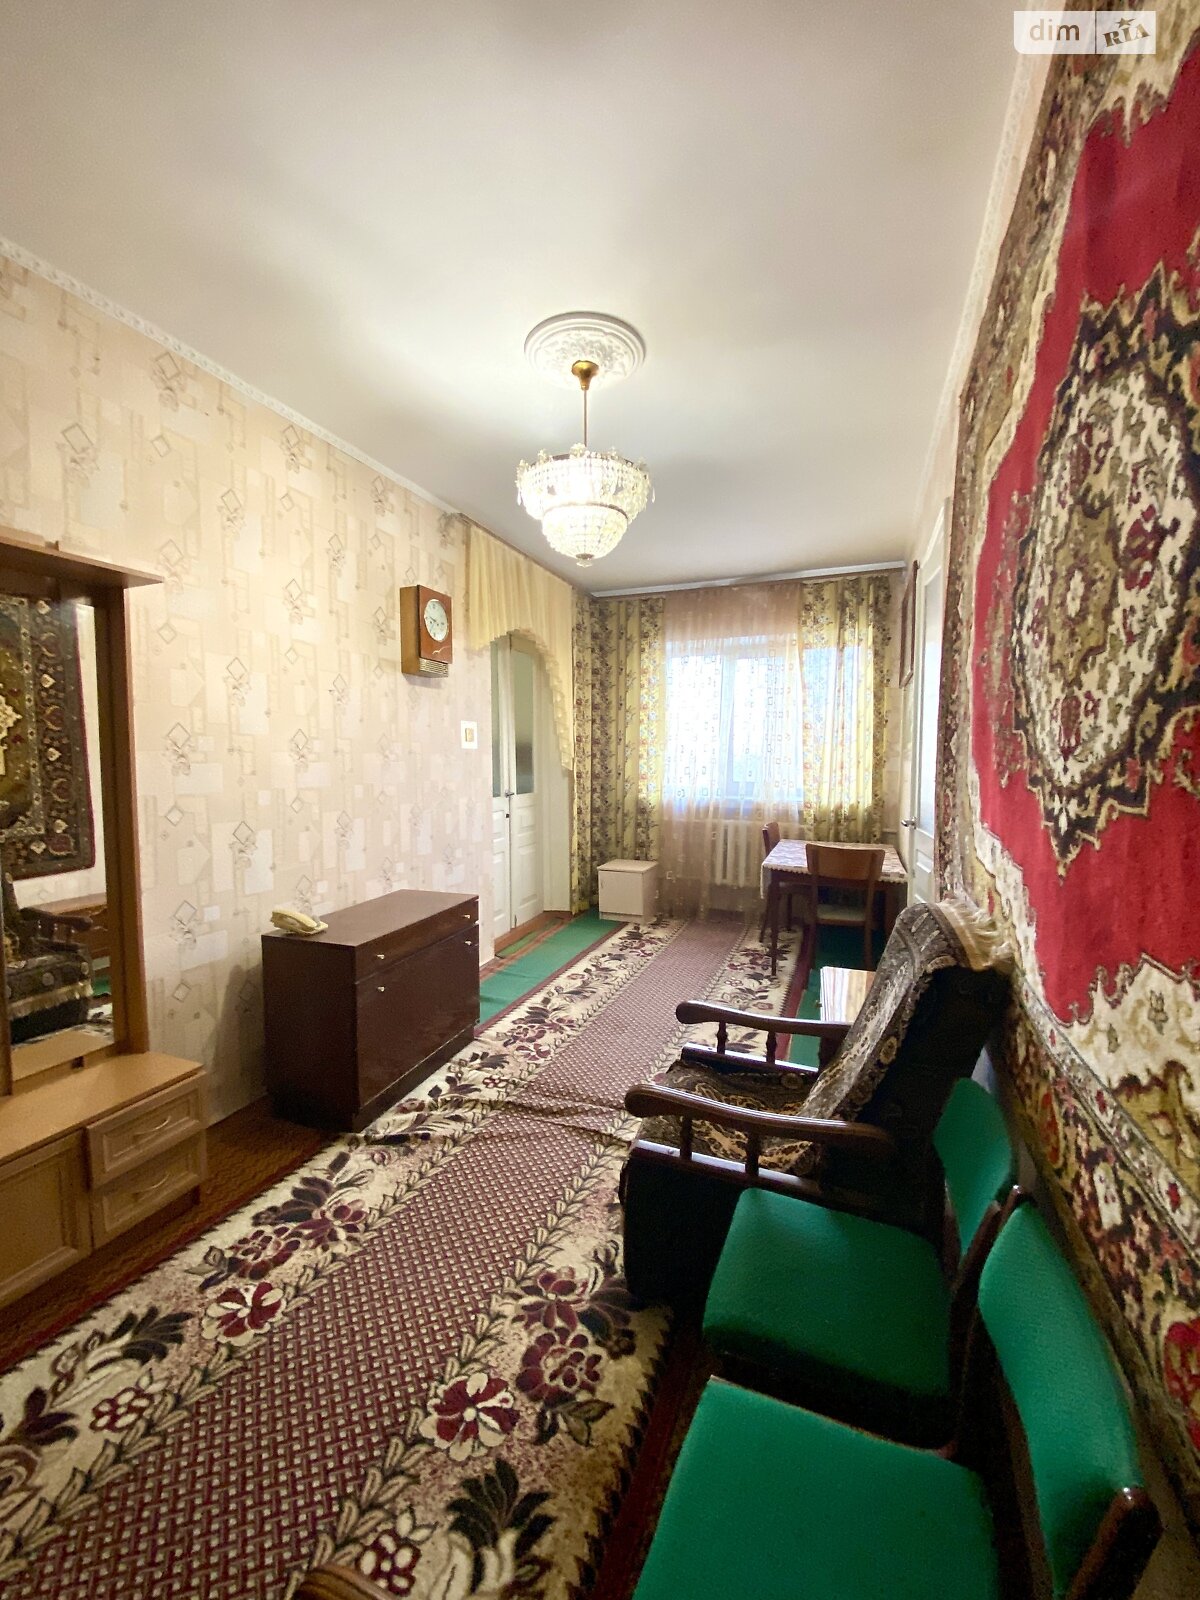 Продажа части дома в Николаеве, переулок Богдана Хмельницкого, район Широкая Балка, 2 комнаты фото 1